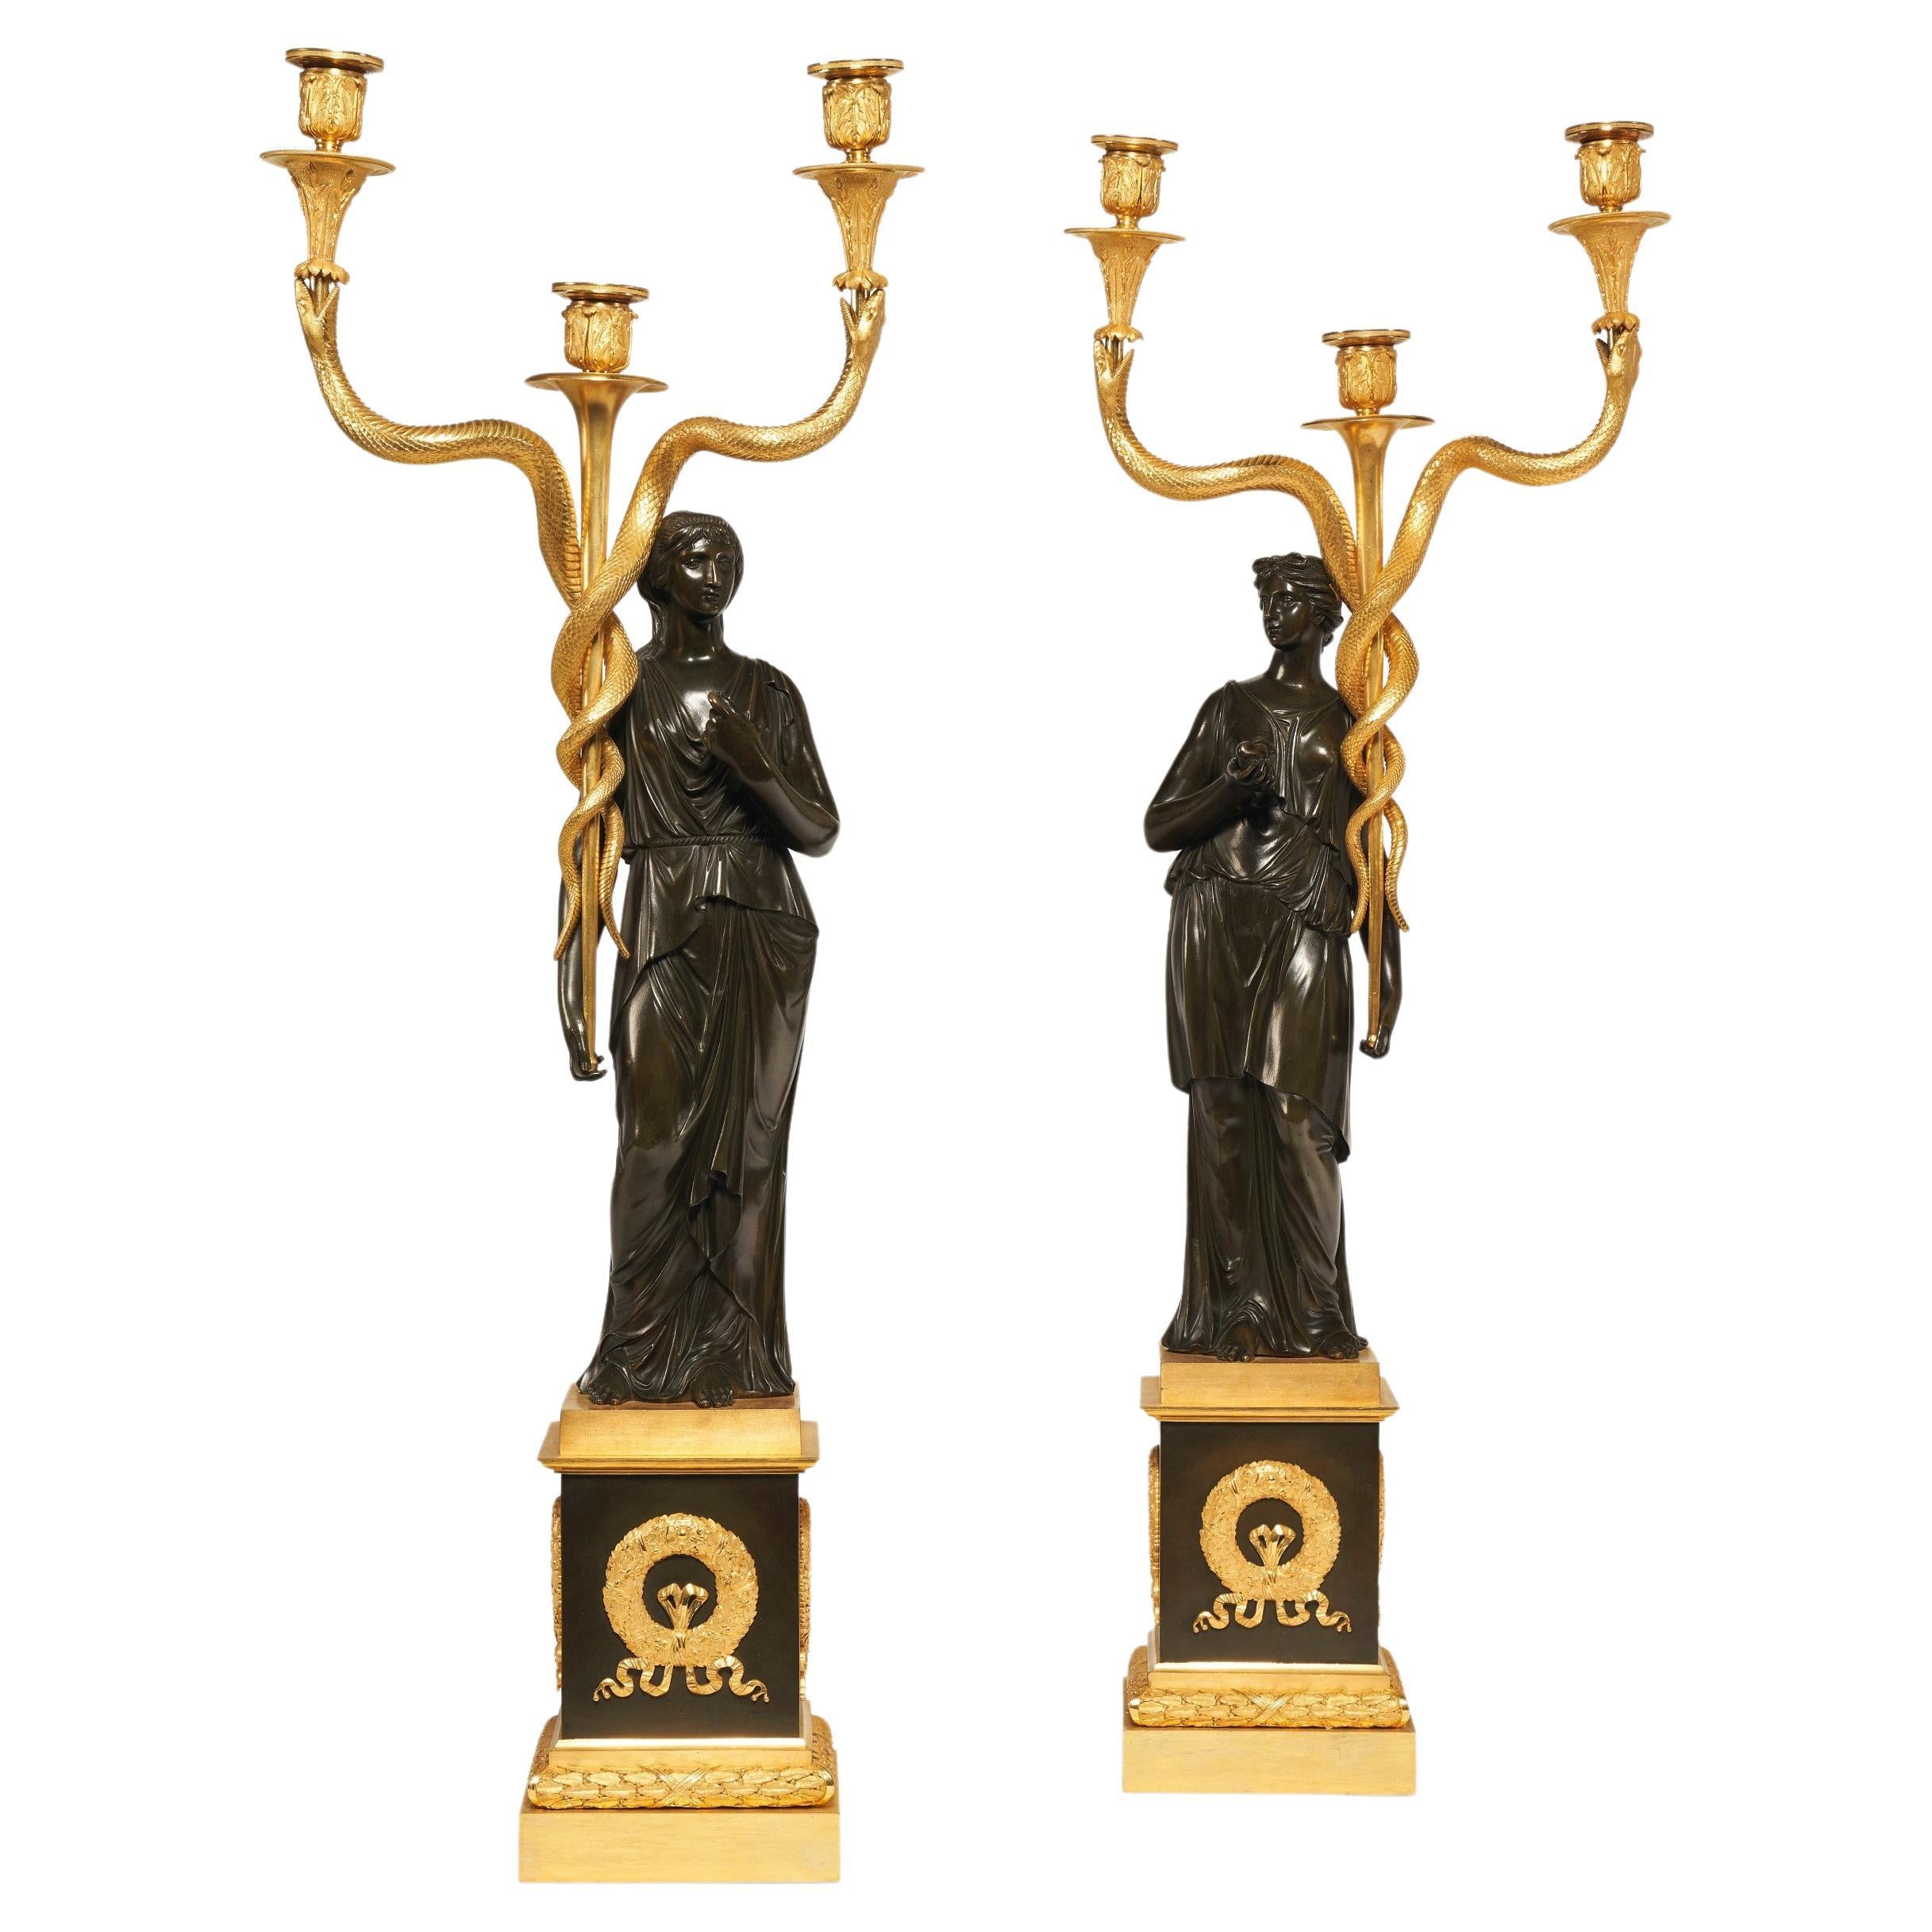 Candélabre figuratif de style Empire français du 19e siècle en bronze doré et patiné